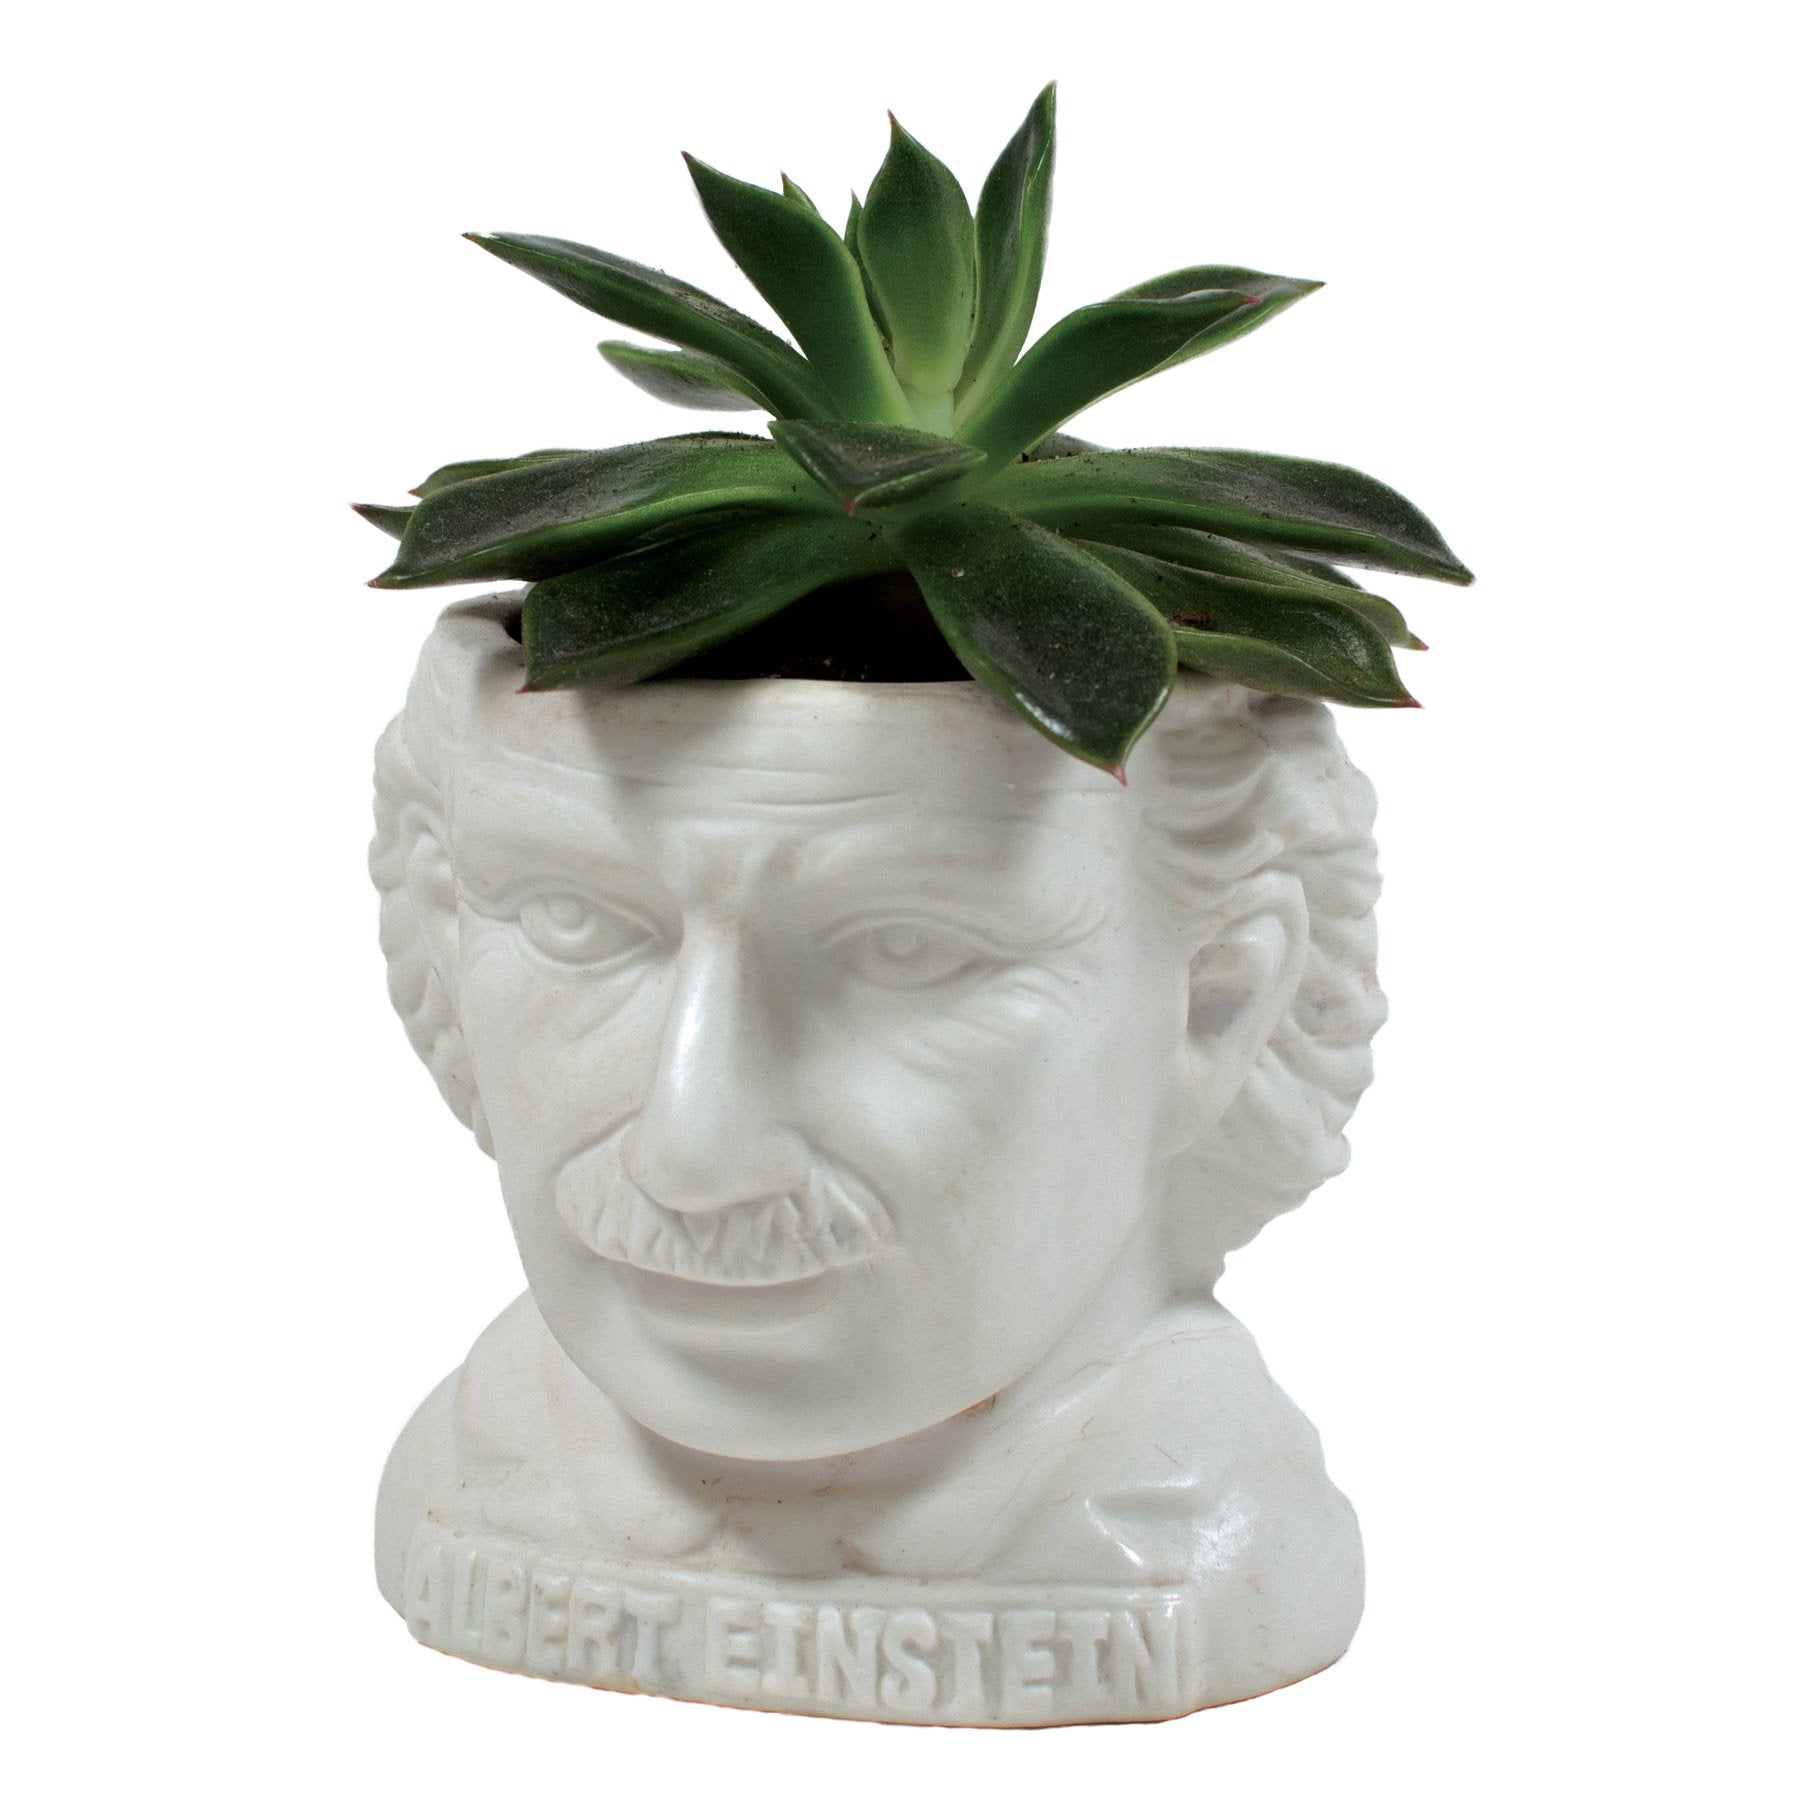 Albert einstein Unemployed philosopher's guild plant planter genius physicist e=mc2 professor crazy hair great mustache 